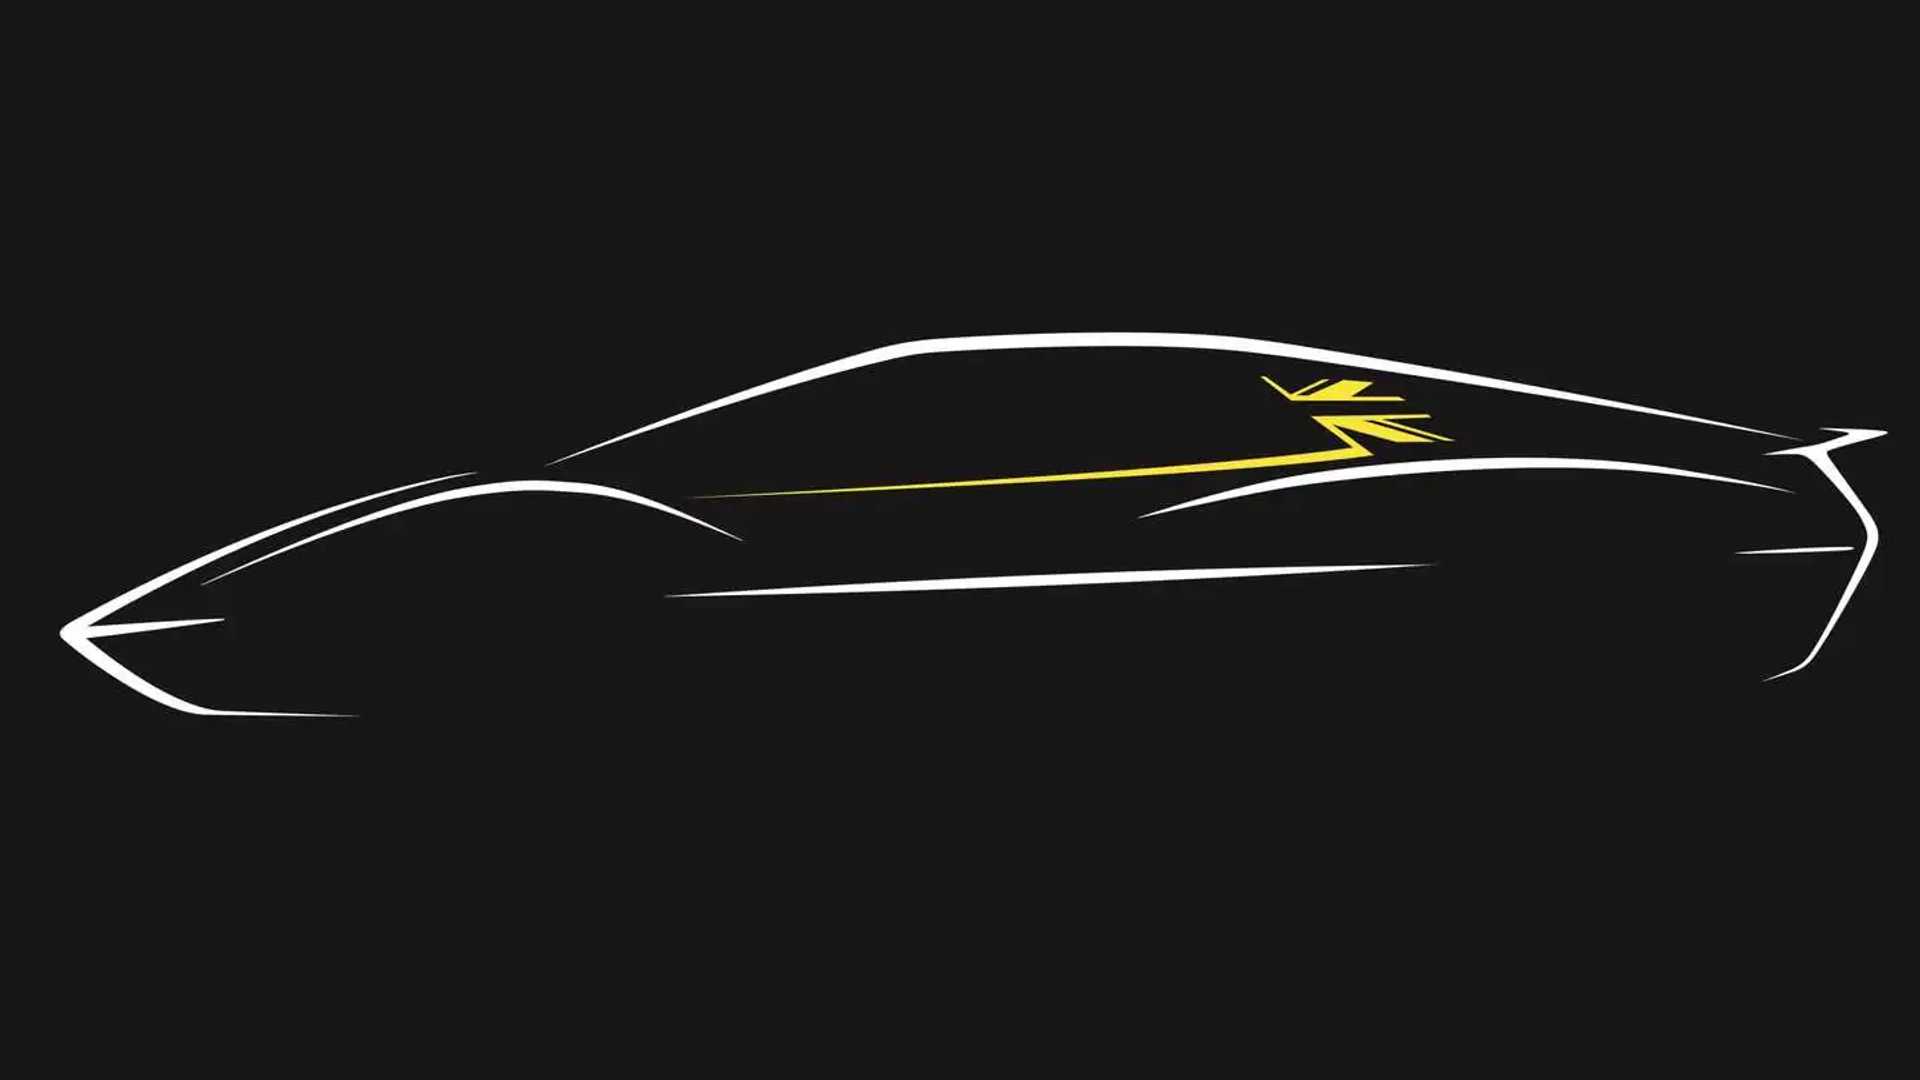 لوتوس در سال 2027 خودروی اسپرت برقی را جایگزین امیرا خواهد کرد